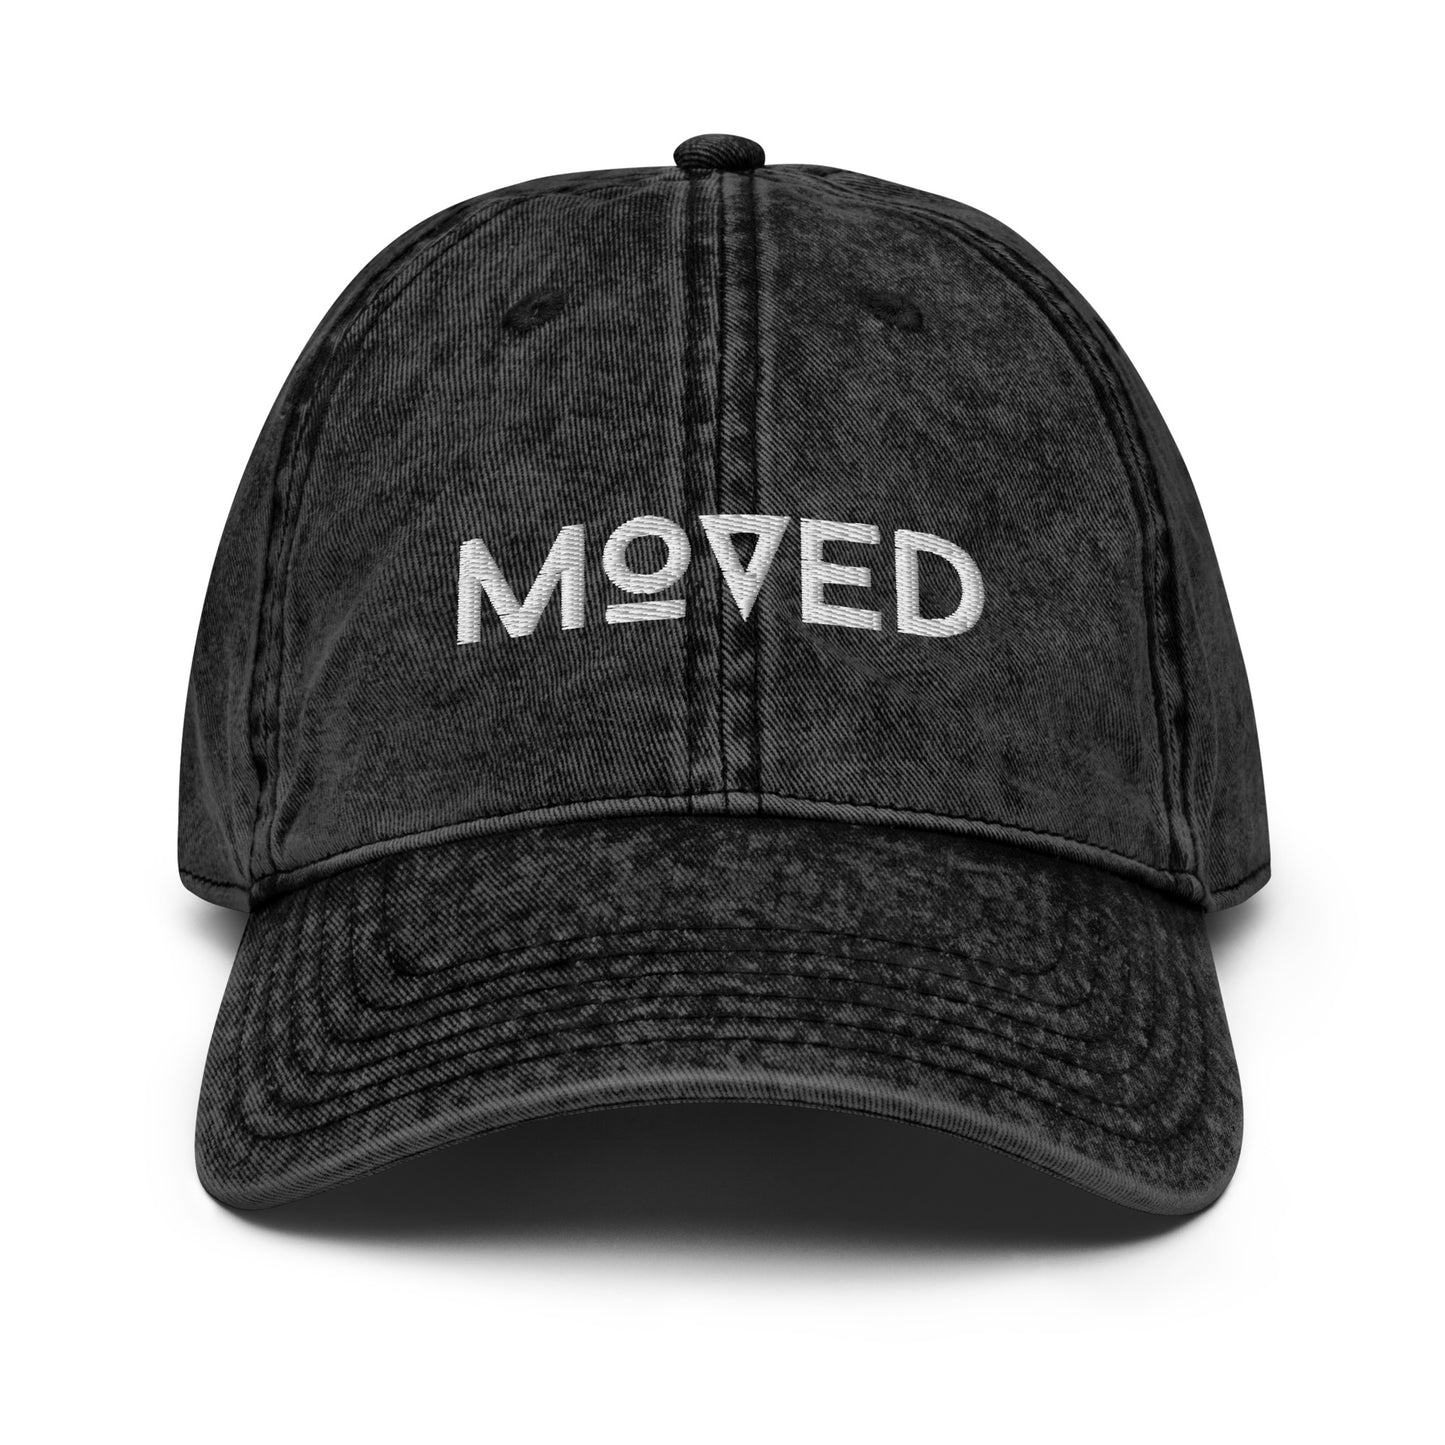 MOVED unisex cap